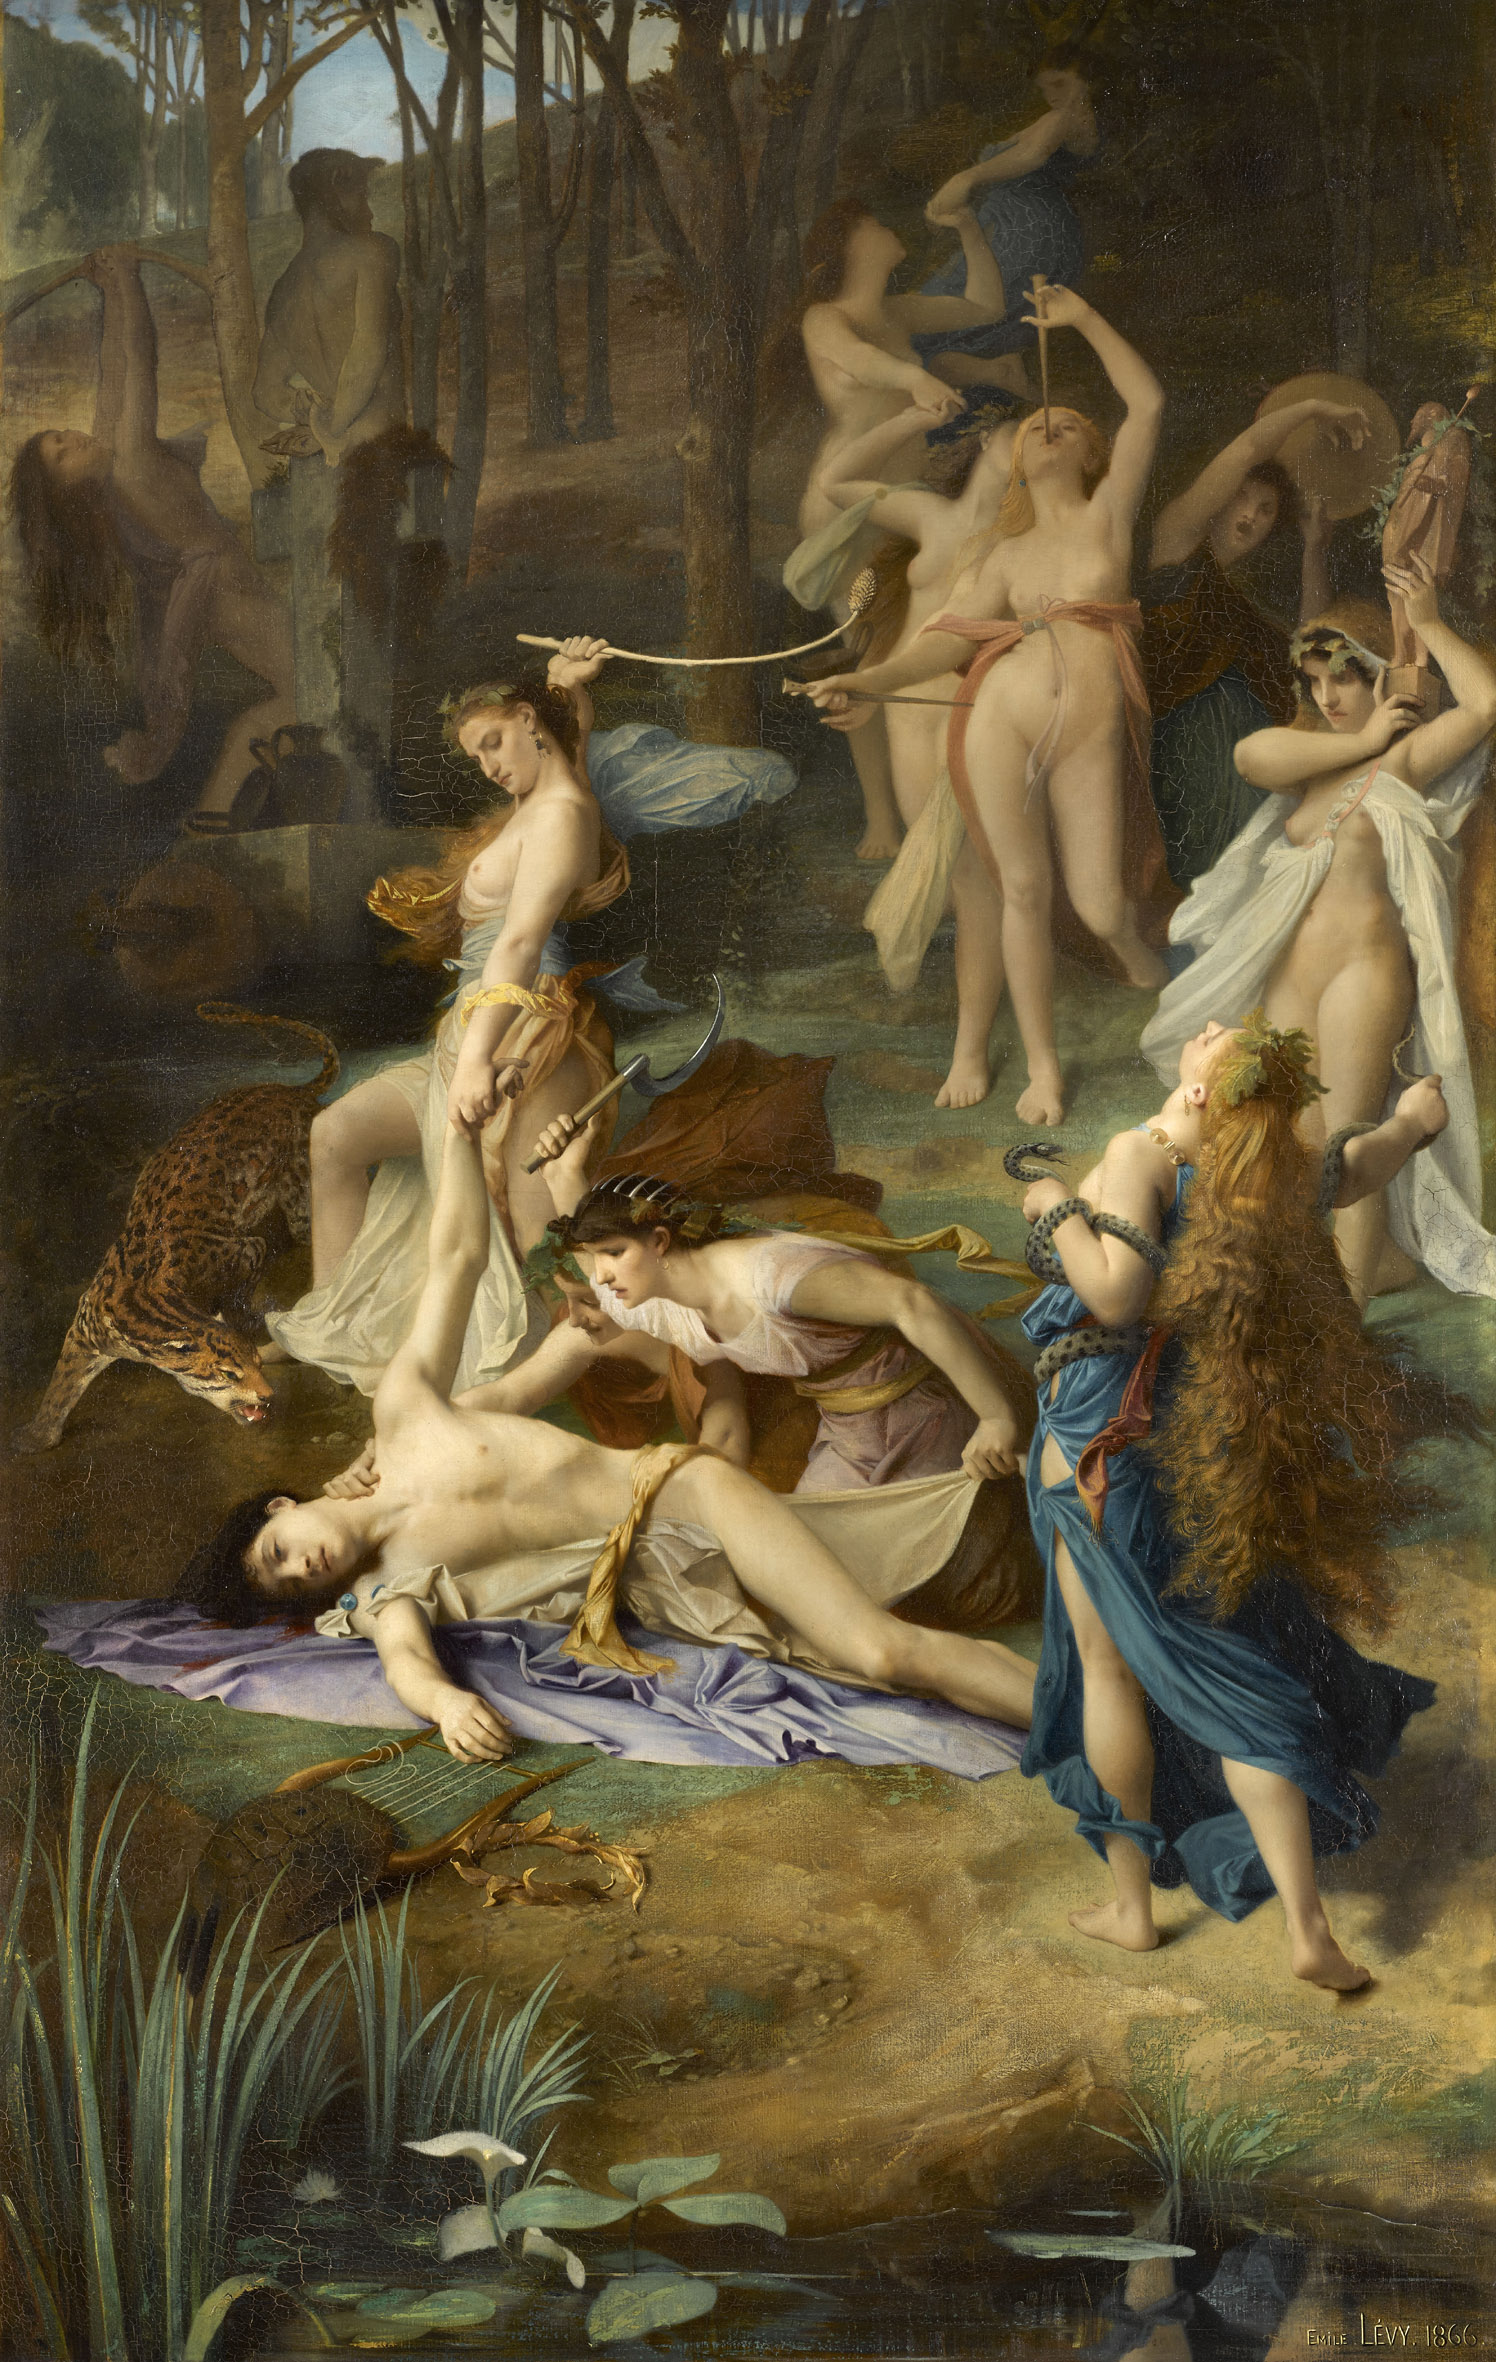 Émile Lévy, La Mort d'Orphée , 1866, huile sur toile, Paris, musée d’Orsay. Photo © RMN-Grand Palais (musée d'Orsay) / Stéphane Maréchalle